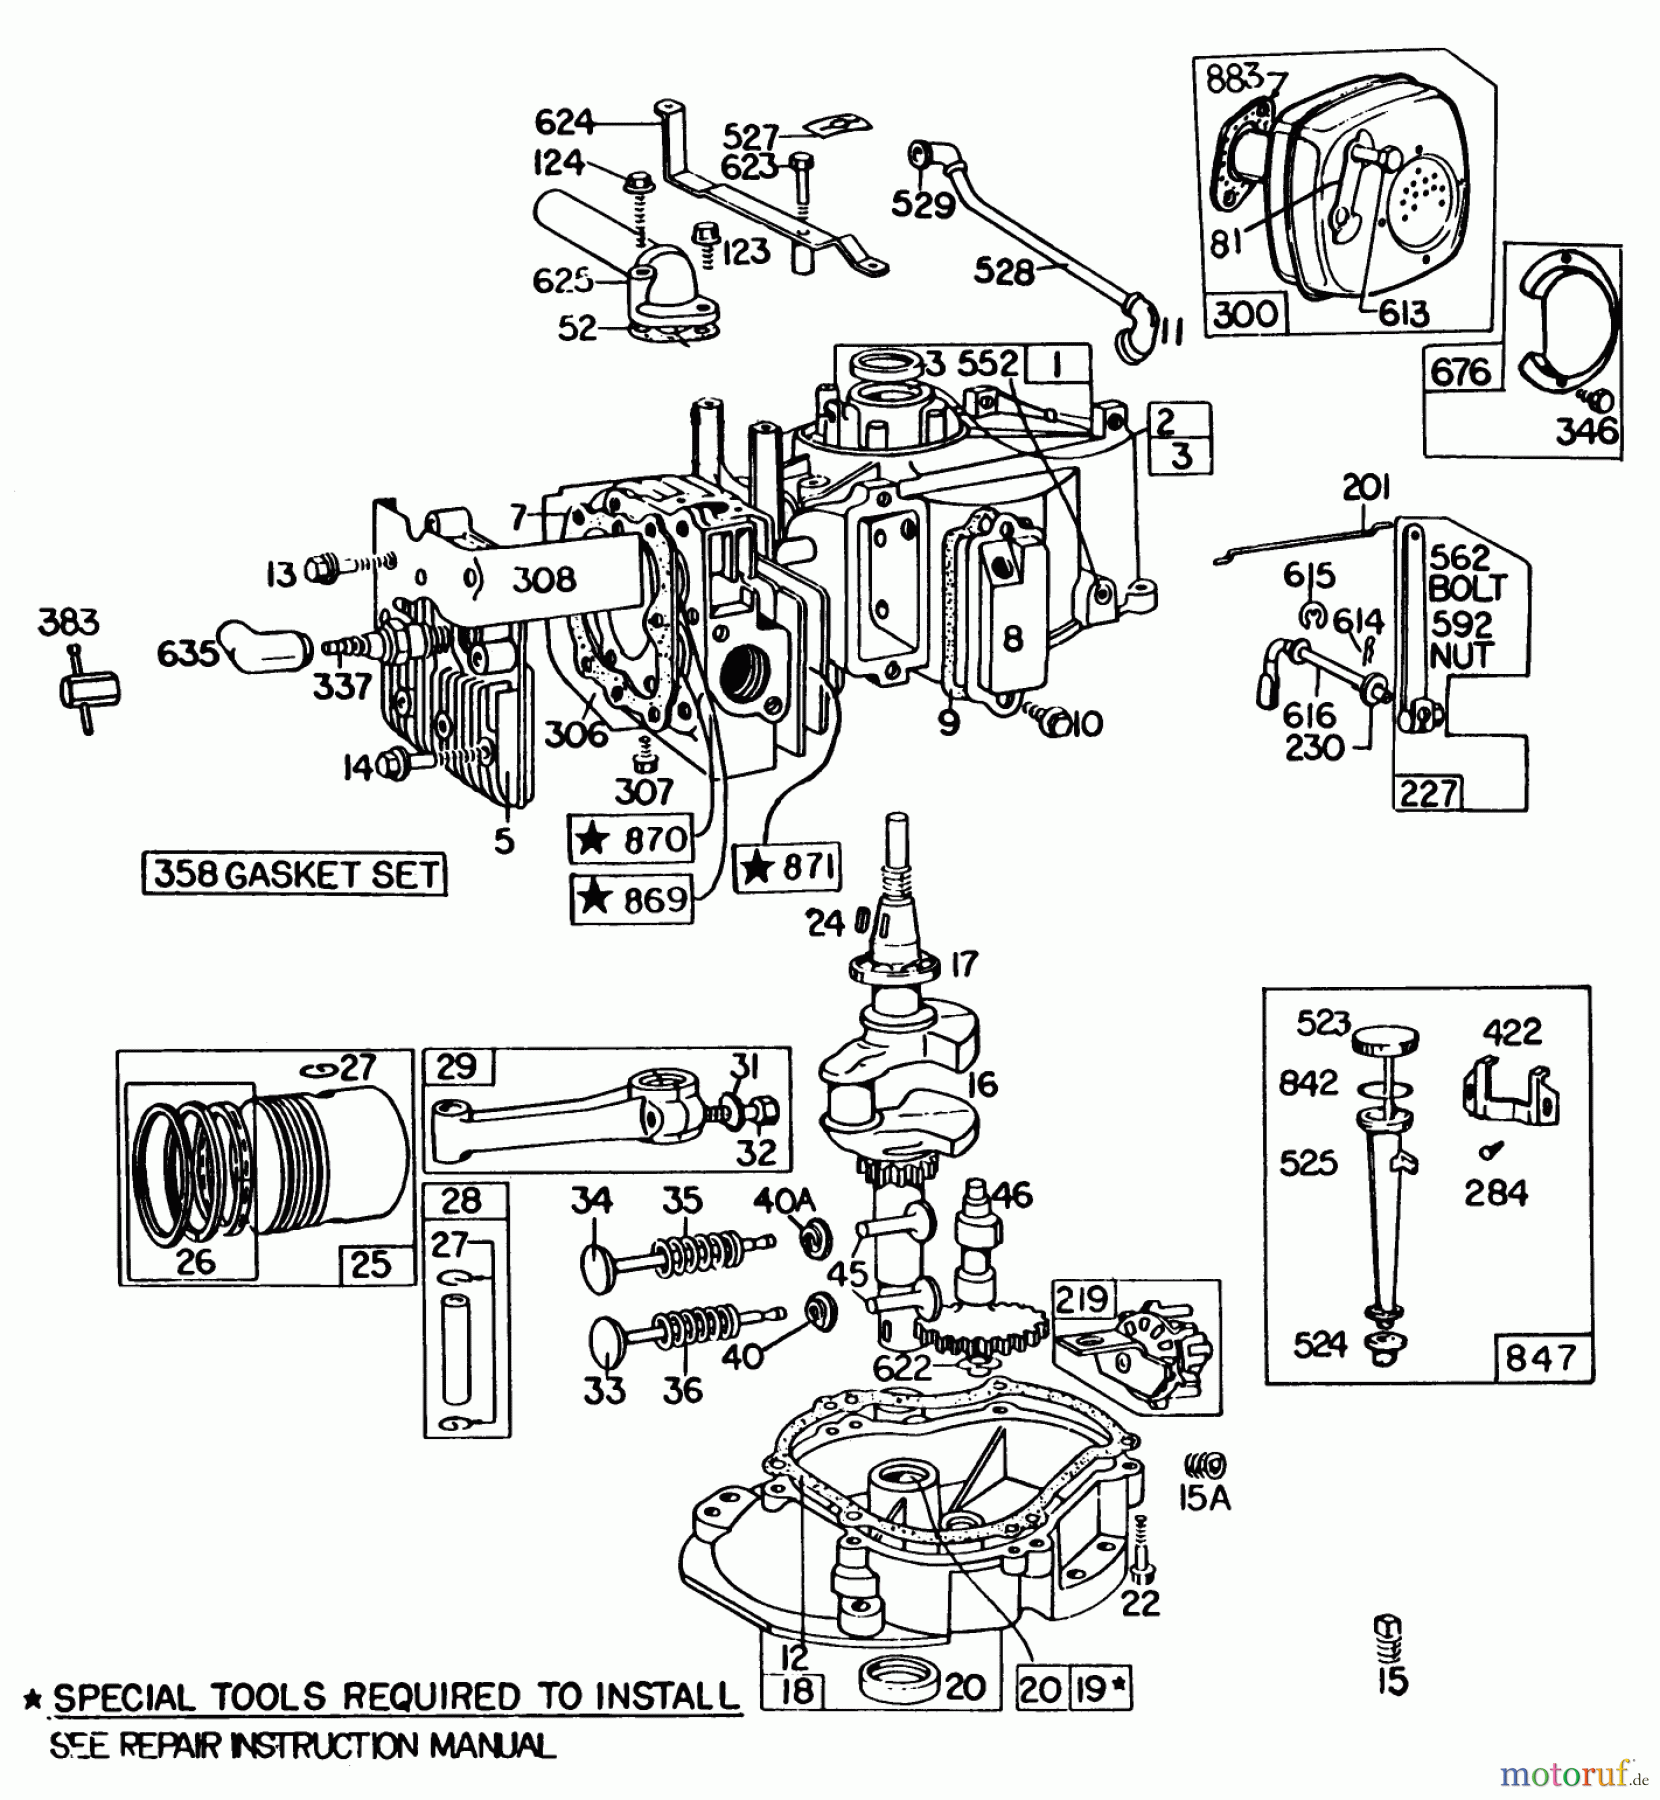  Toro Neu Mowers, Walk-Behind Seite 2 22015 - Toro Lawnmower, 1984 (4000001-4999999) ENGINE BRIGGS & STRATTON MODEL 131922-0163-01 #1